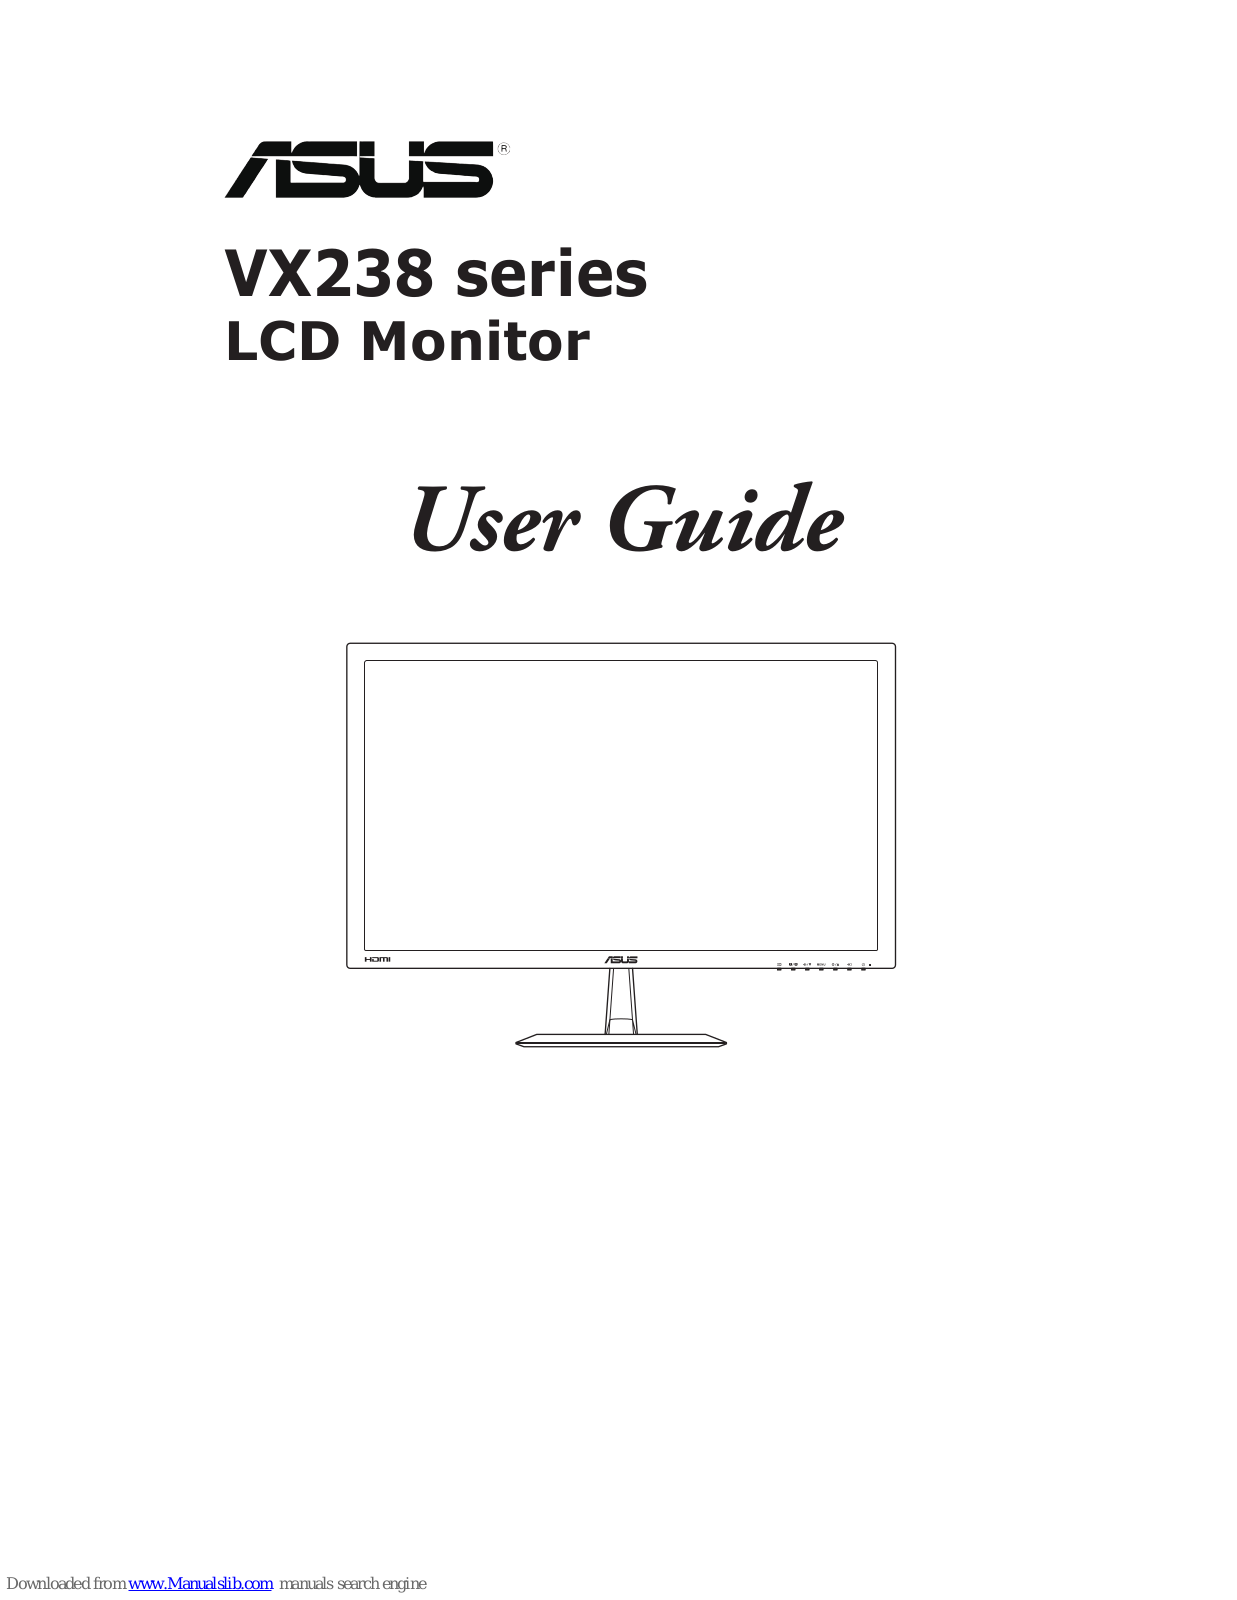 Asus VX238T, VX238S, VX238N, VX238D User Manual